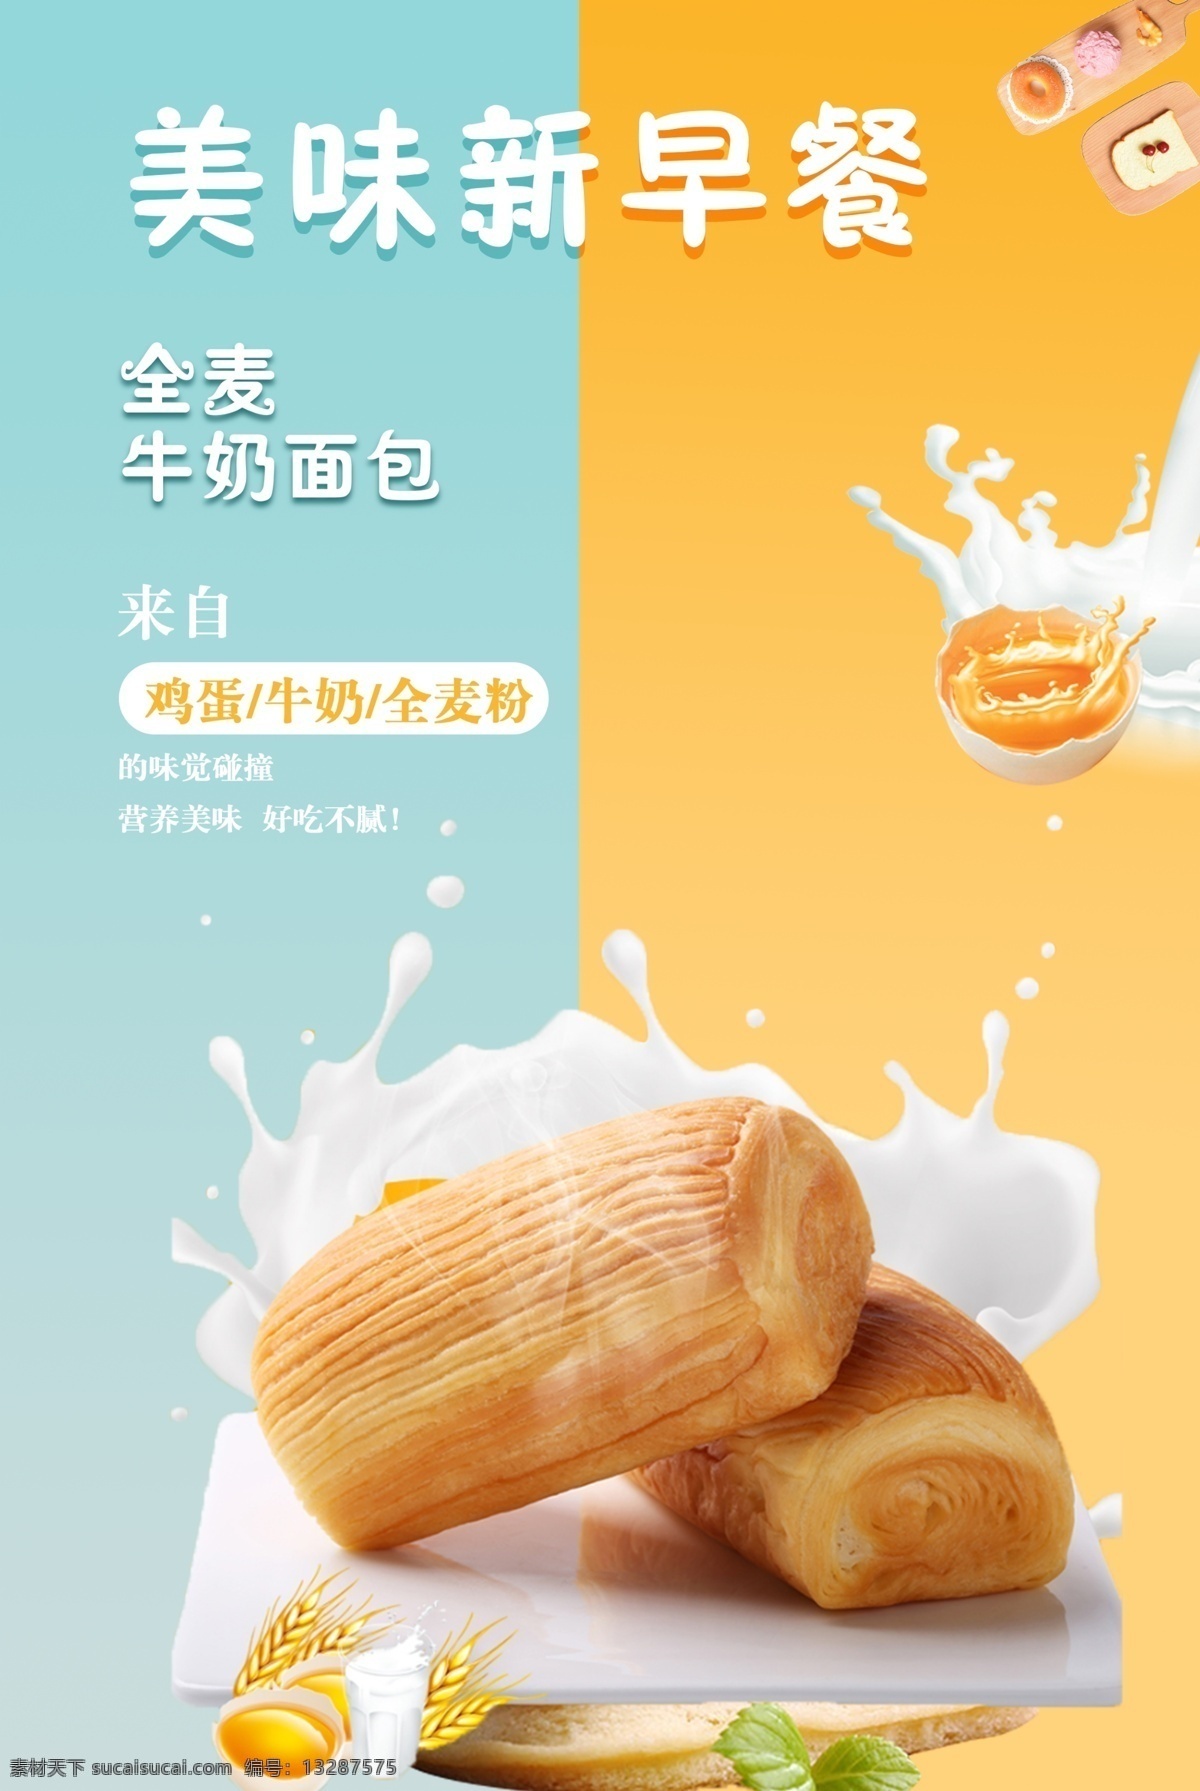 面包海报 牛奶 鸡蛋 早餐 糕点 西点 营养早餐 海报 渐变背景 牛奶面包 牛奶鸡蛋 美味新早餐